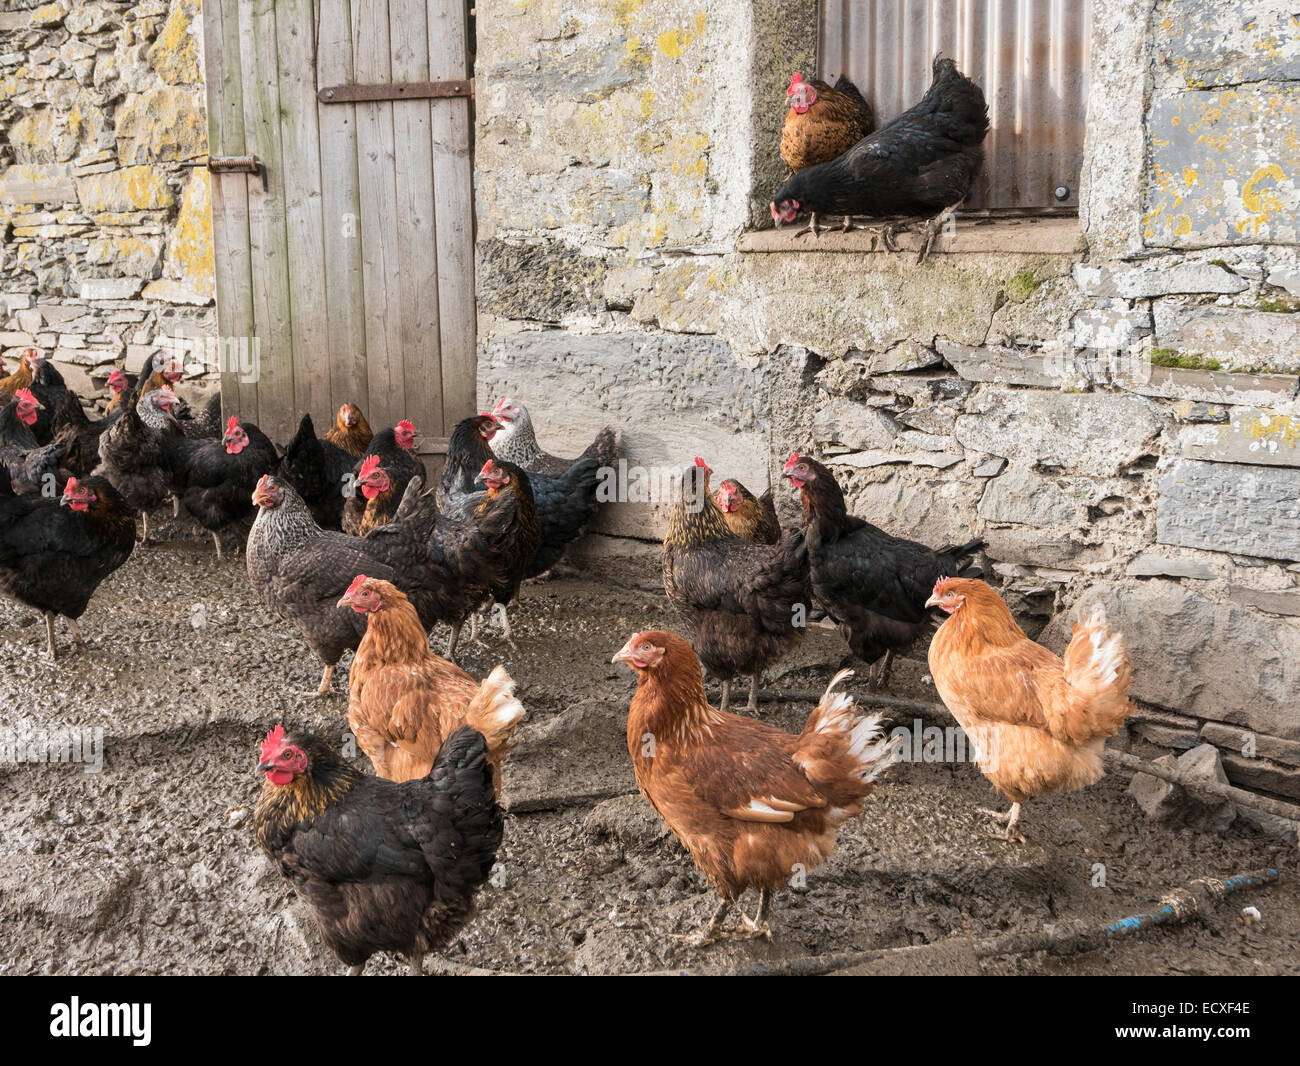 La scène de l'élevage de poulets avec des poulets de plage gratuits à l'extérieur d'une grange en pierre coup de poulet. Gwynedd, Pays de Galles, Royaume-Uni, Grande-Bretagne Banque D'Images